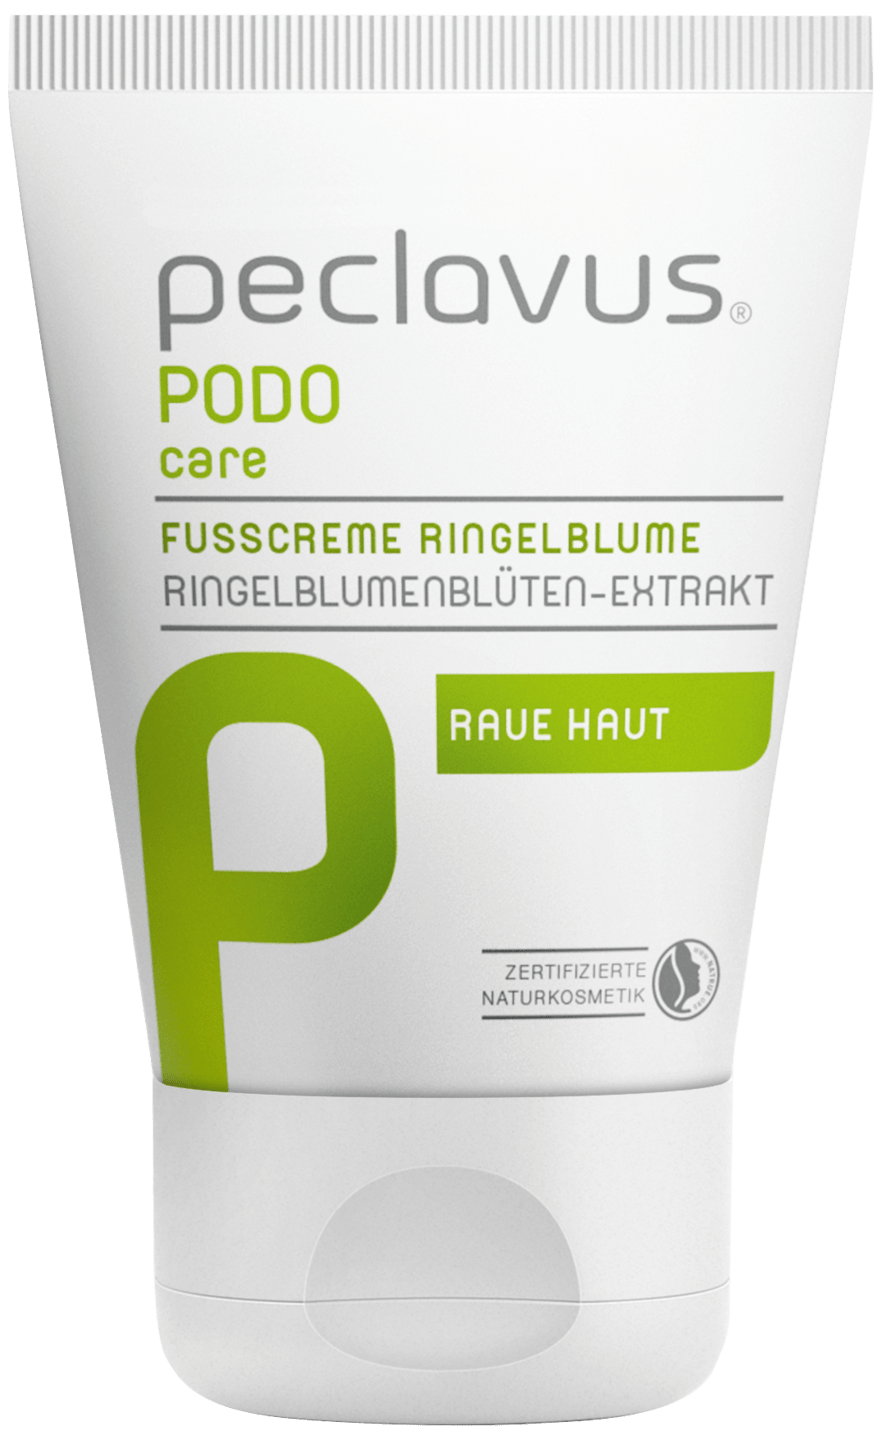 peclavus - Fußcreme Ringelblume, 30 ml